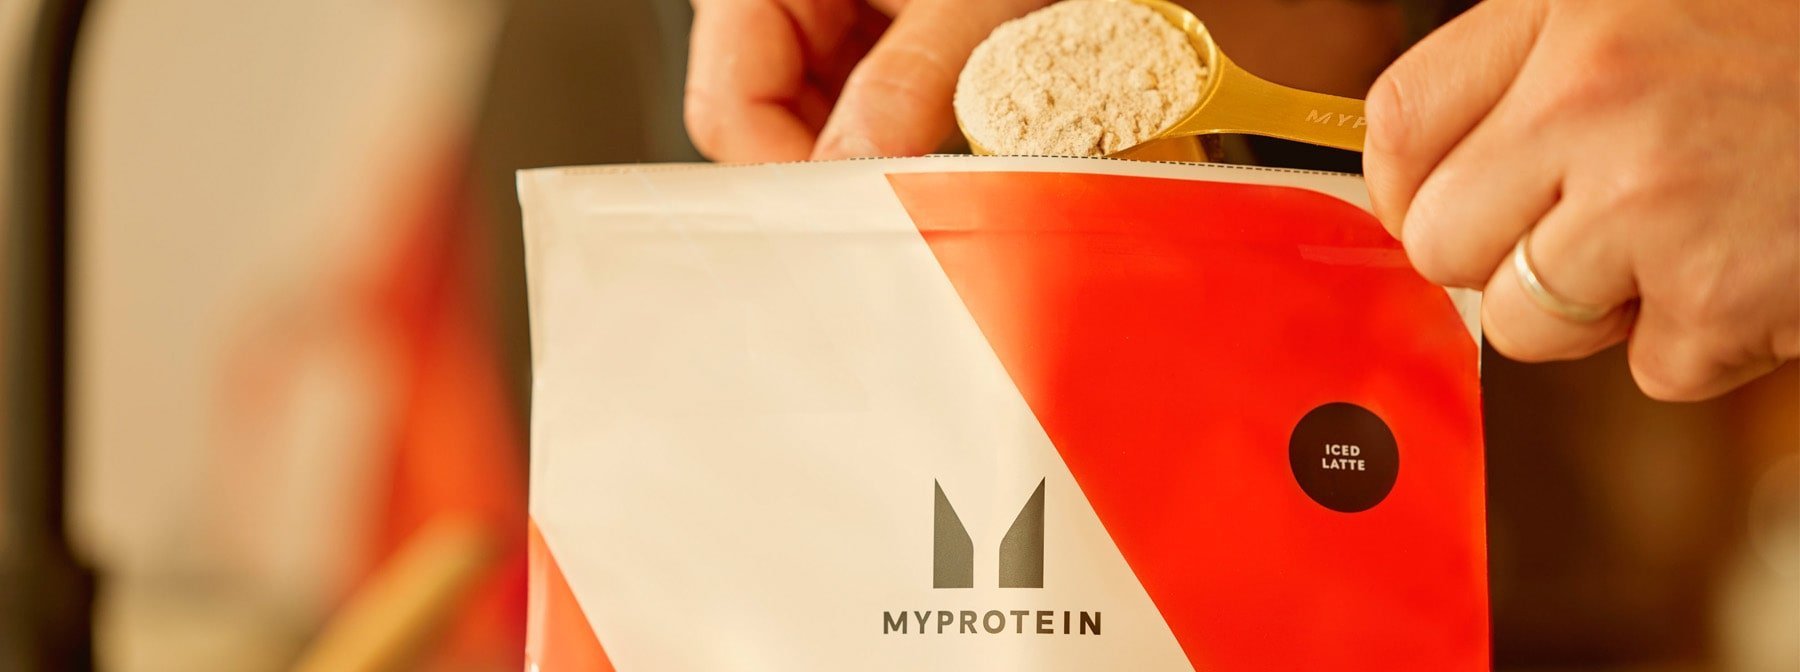 Ihr habt entschieden: Das sind Myproteins beste Whey Protein Geschmacksrichtungen